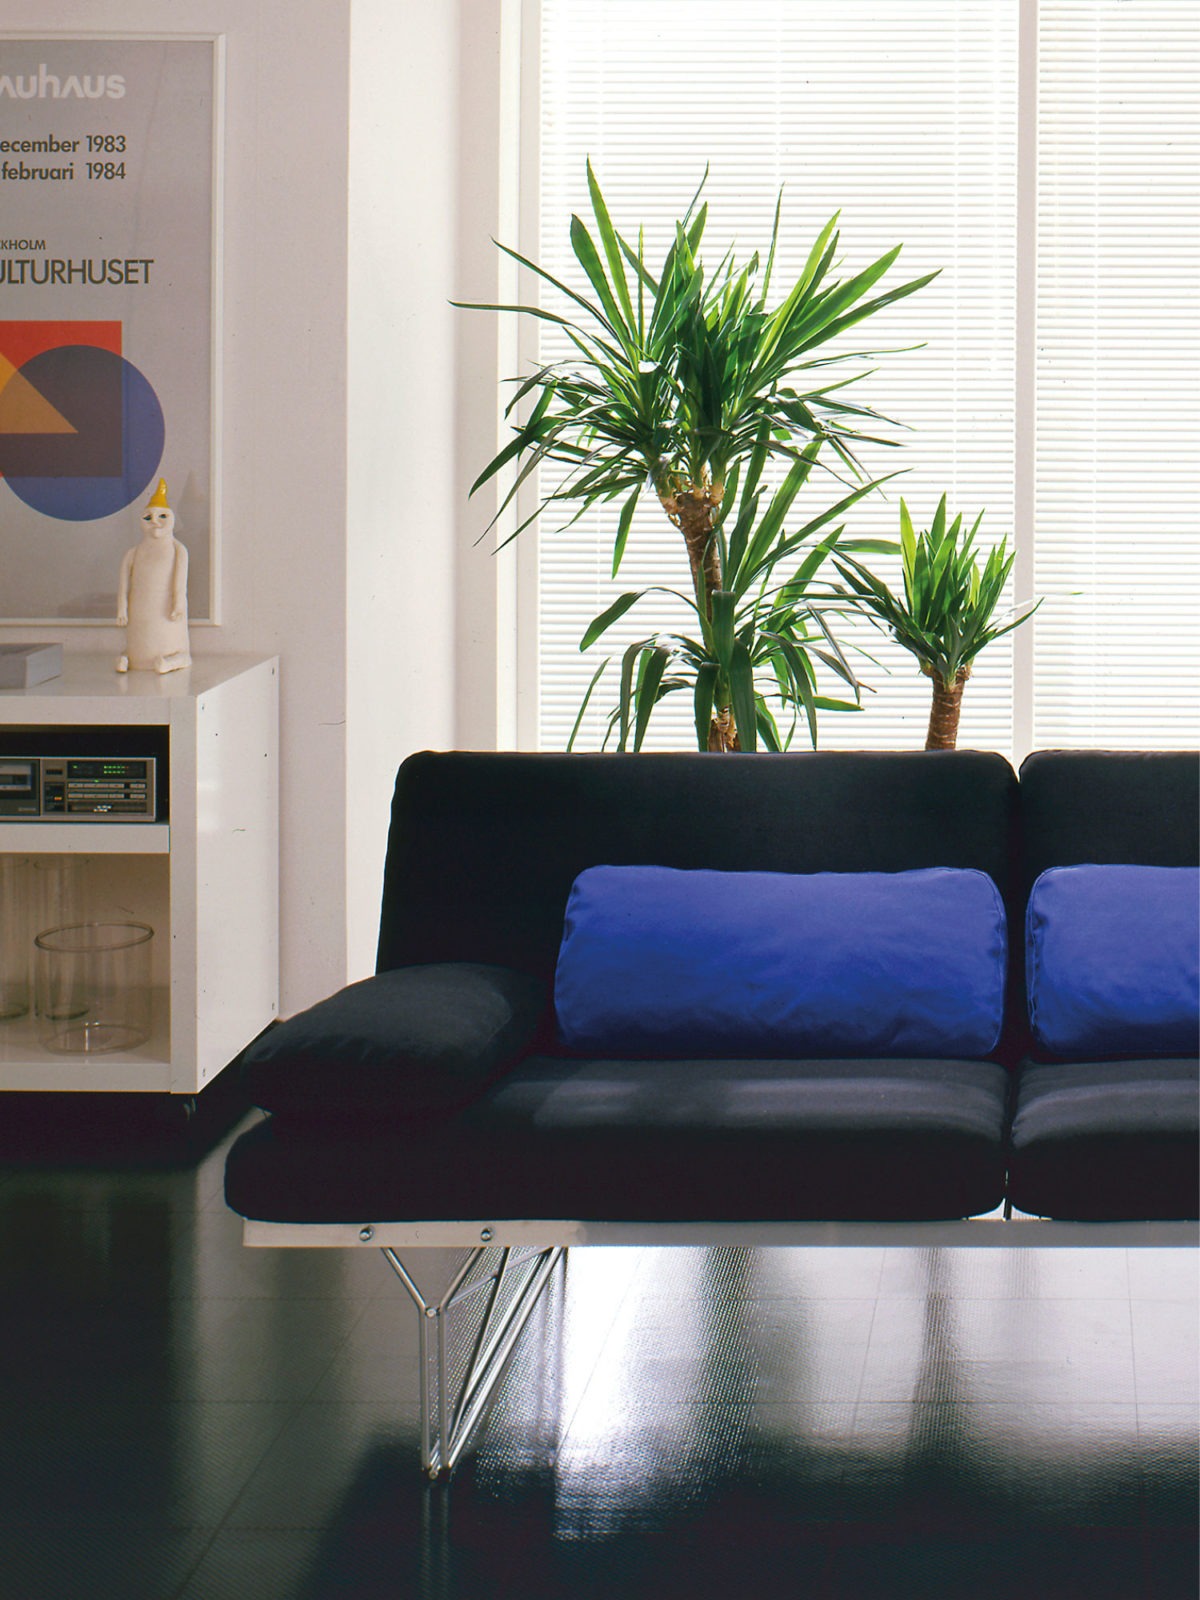 En svart soffa och en flerfärgad hylla, båda av modell MOMENT och med tunna metallstommar, i ett rum med blankt svart golv.